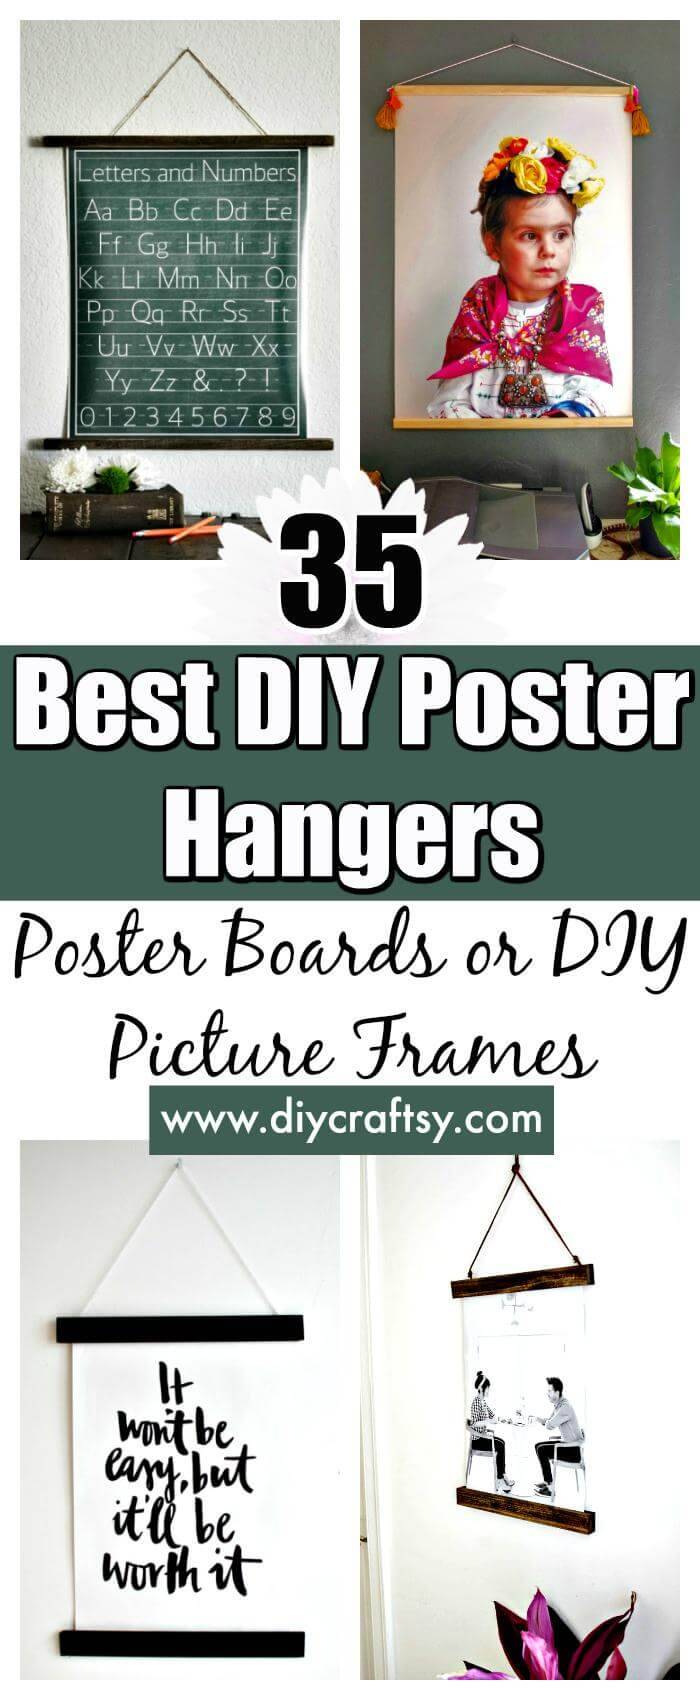 DIY Poster Hangers